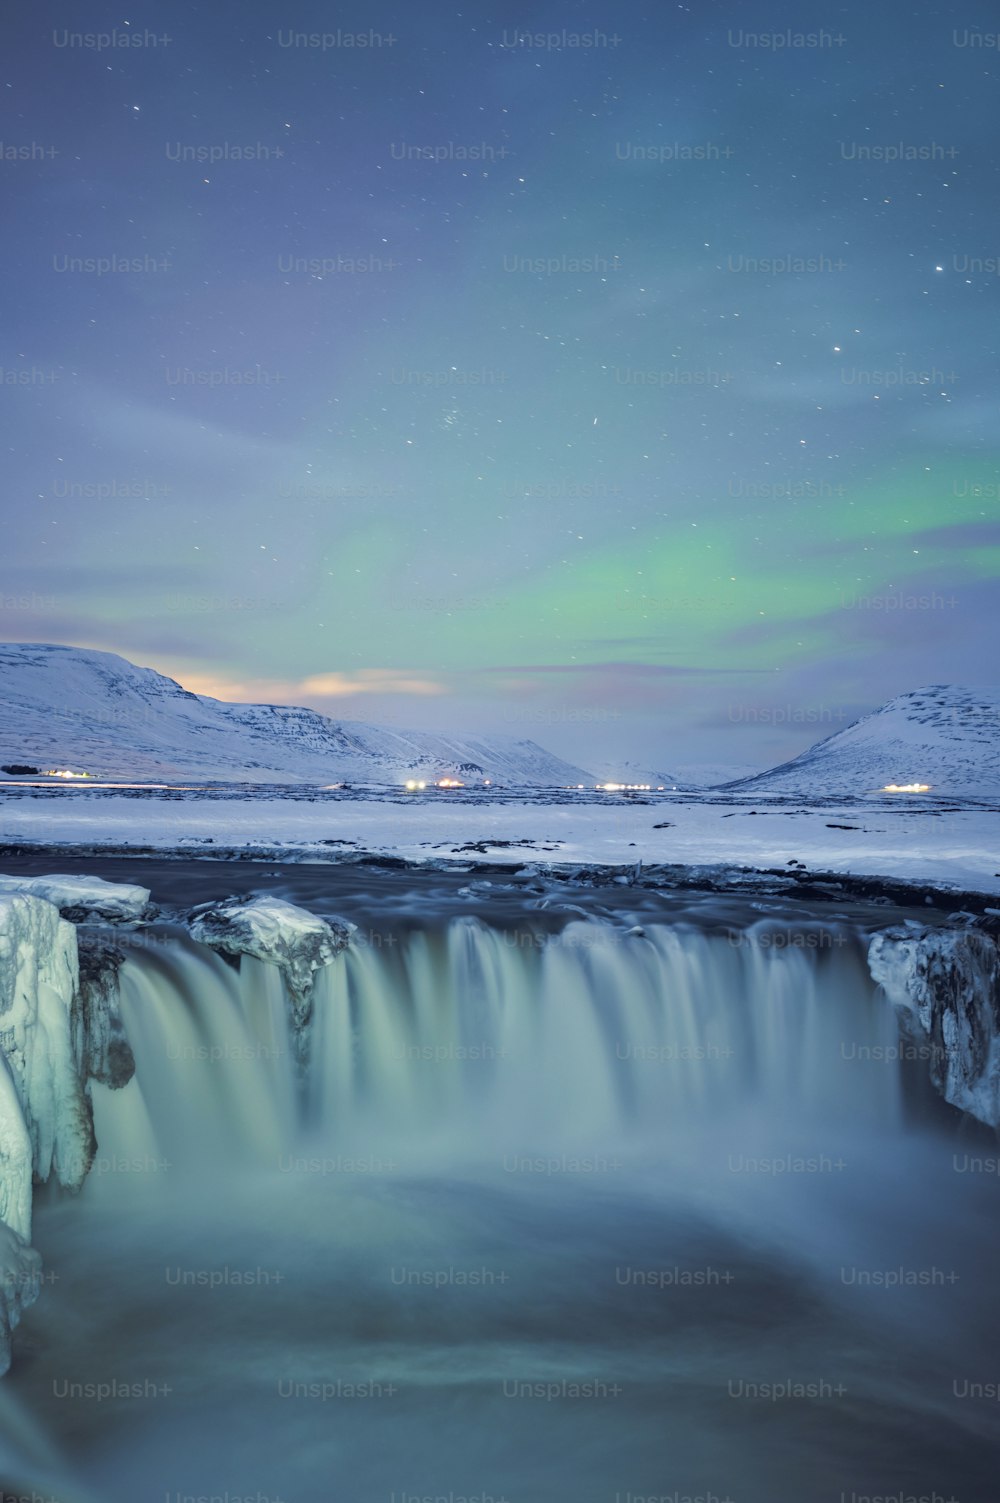 Una cascata ghiacciata con una luce verde aurora nel cielo